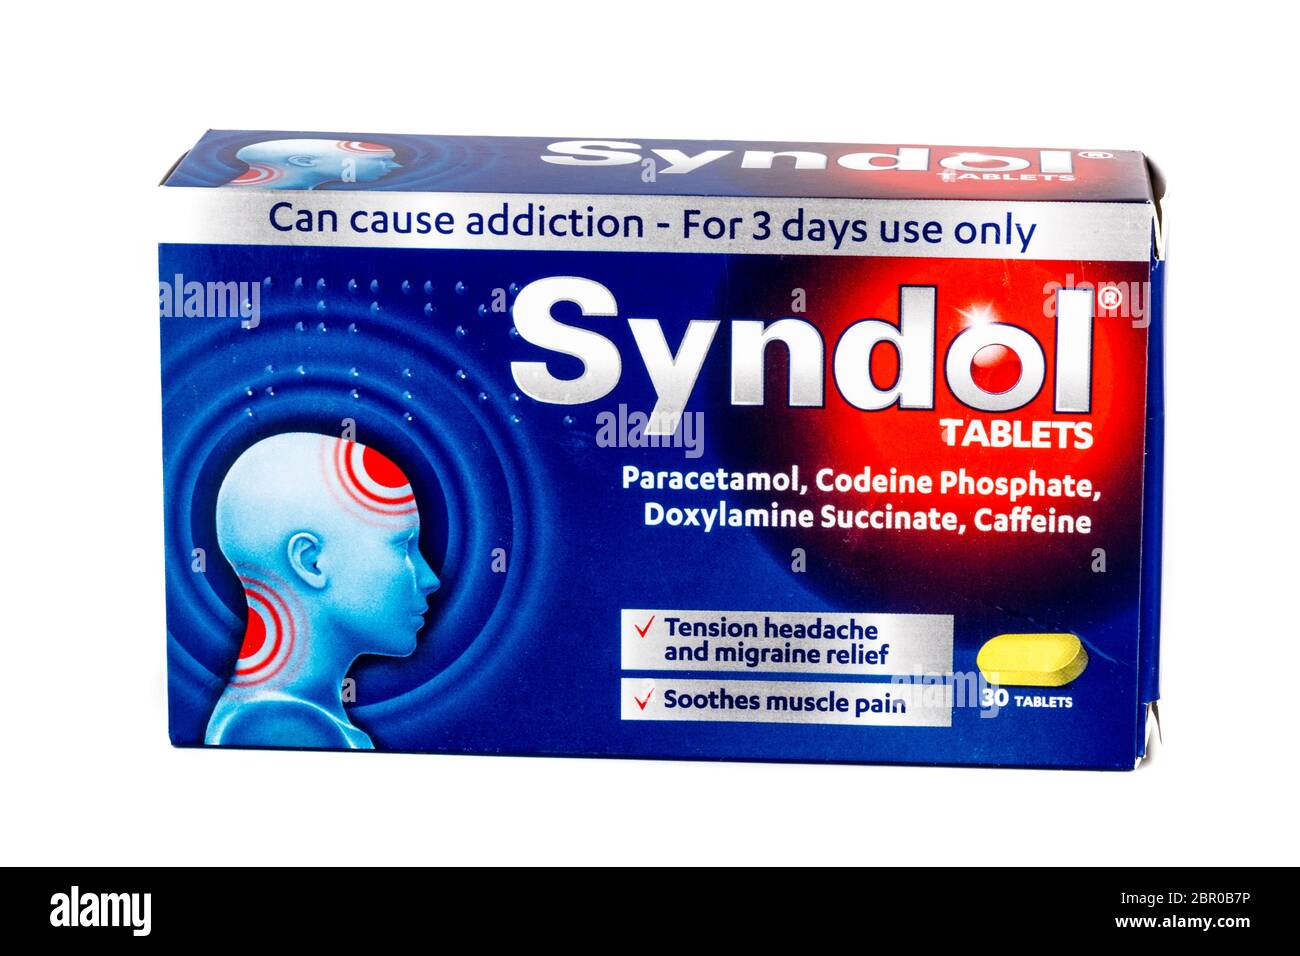 Syndol Paracetamol, Syndol, paracétamol puissant, phosphate de codéine, succinate de doxylamine, comprimés addictifs, paracétamol addictif, Banque D'Images